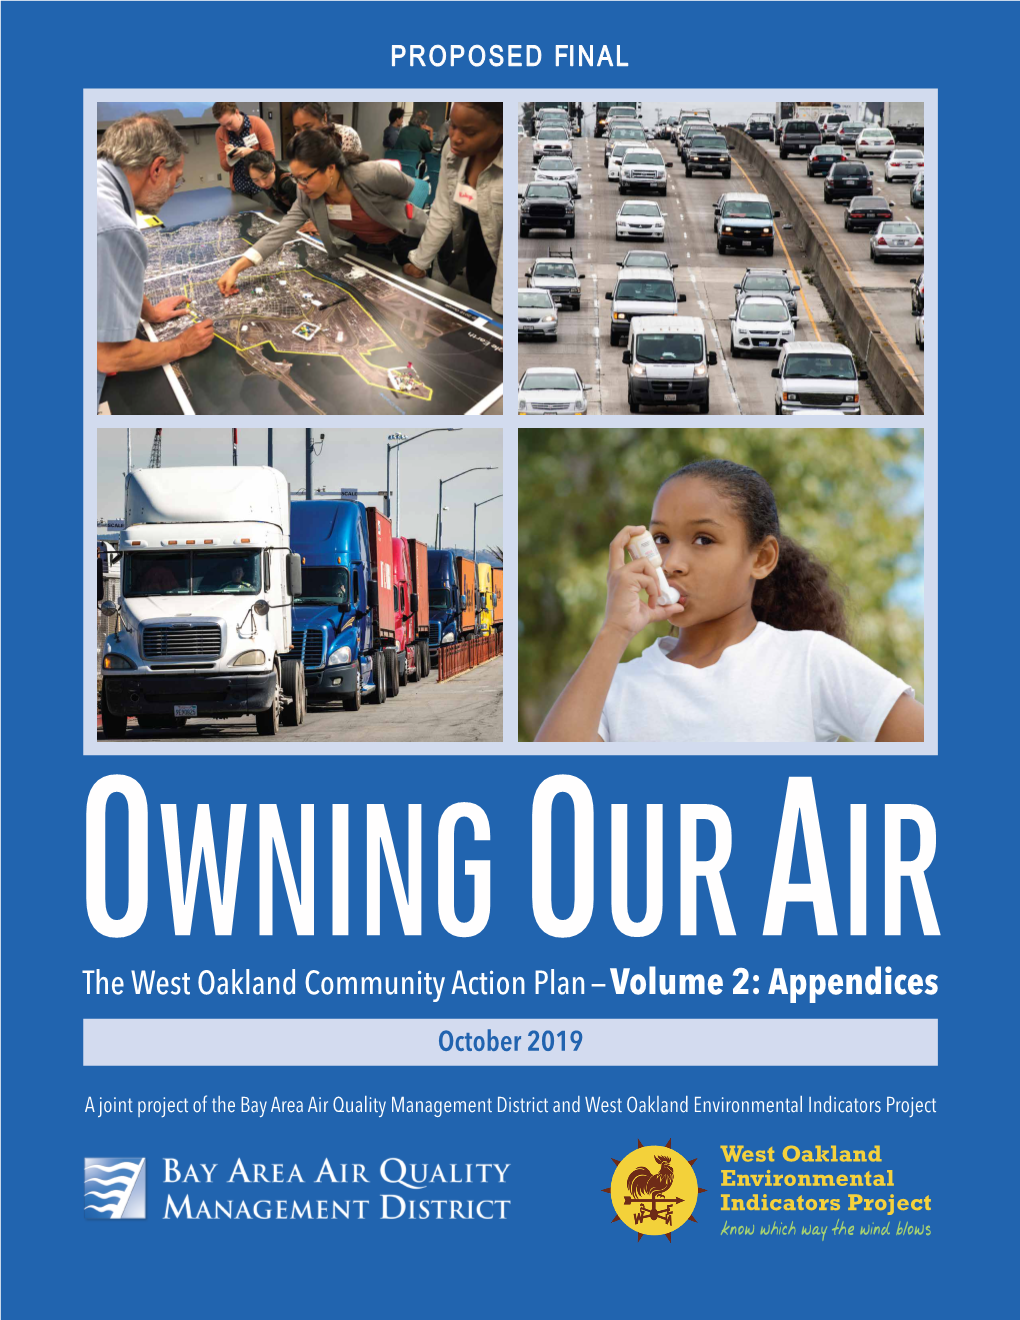 The West Oakland Community Action Plan — Volume 2: Appendices